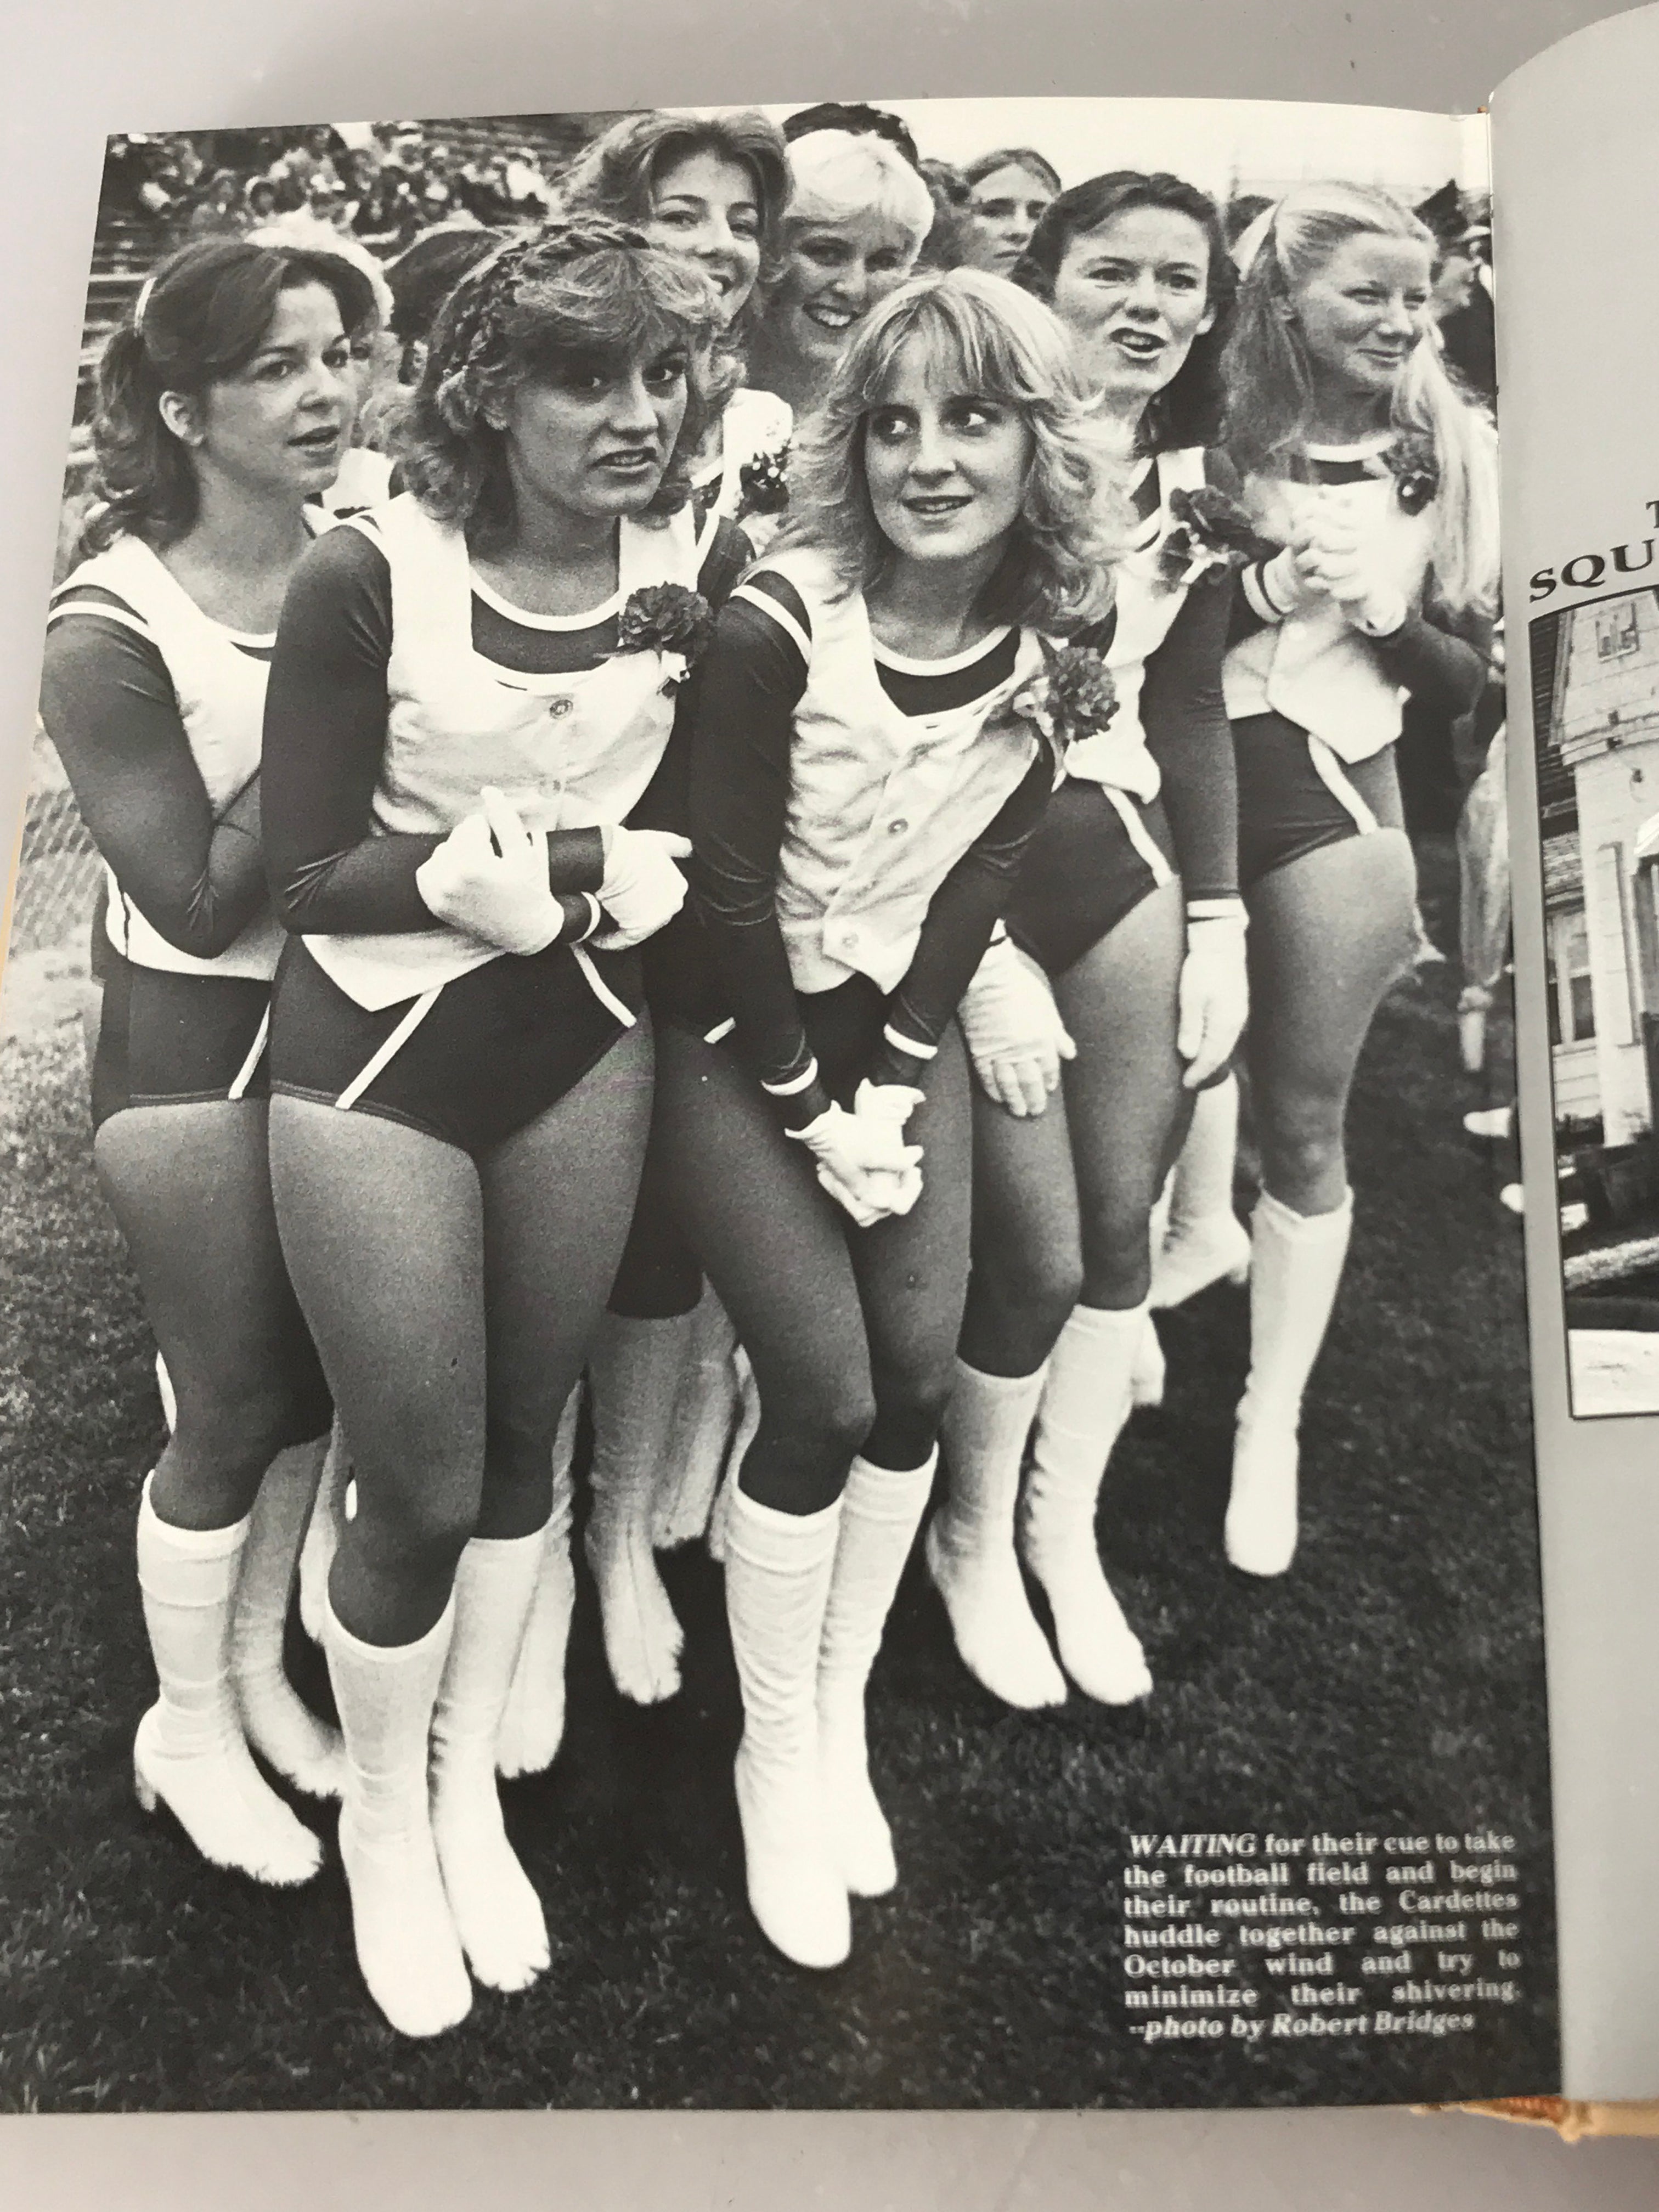 1981 Ball State University Yearbook Muncie Indiana  HC